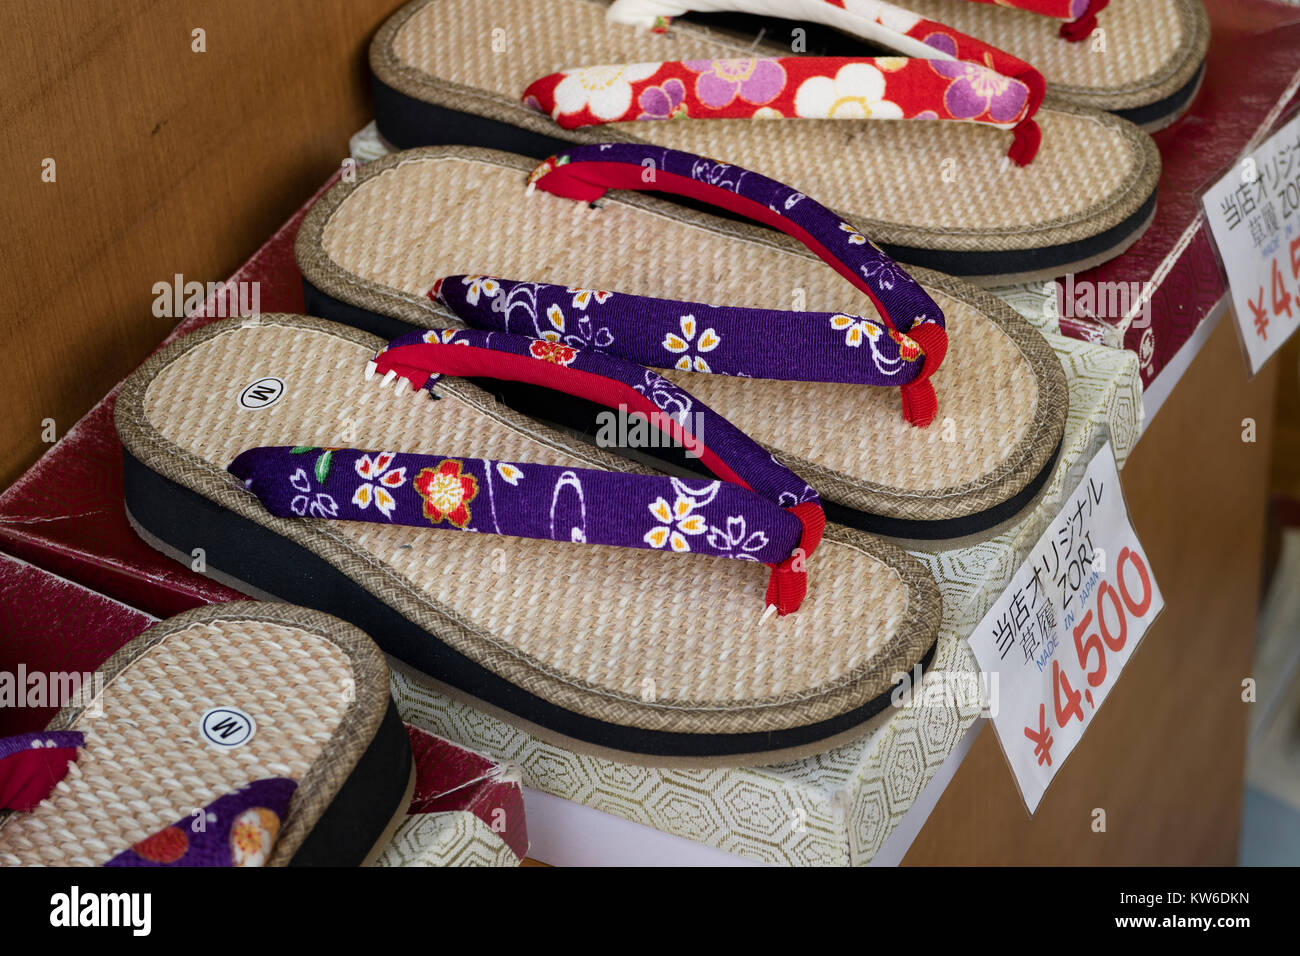 Tokyo - Japon, le 19 juin 2017 : Boutique avec des chaussons traditionnels japonais, appelé zori à vendre Banque D'Images